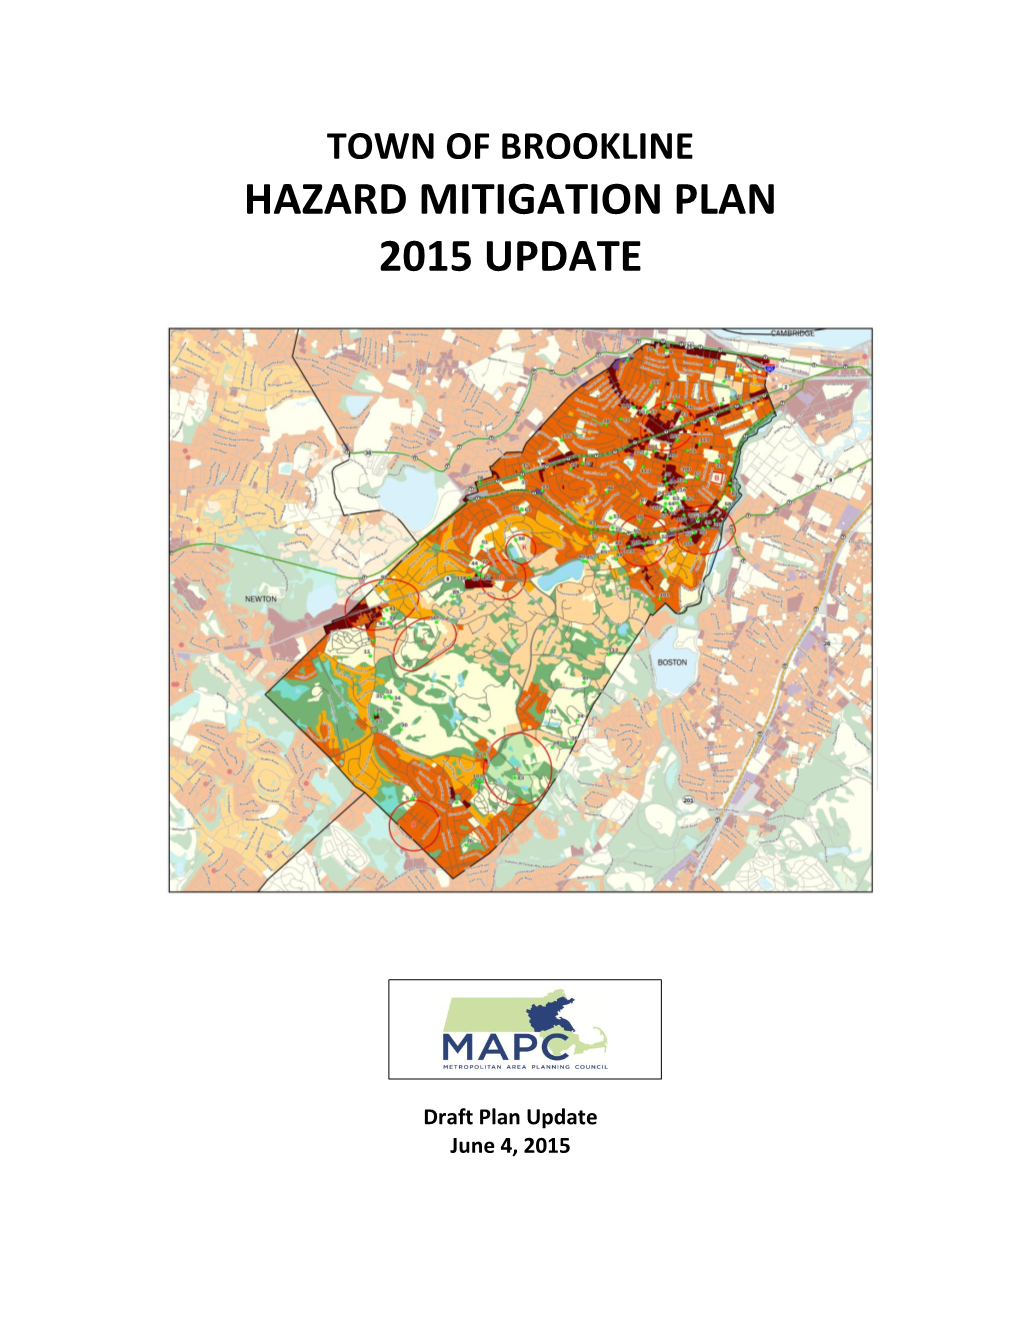 Town of Brookline Hazard Mitigation Plan 2015 Update